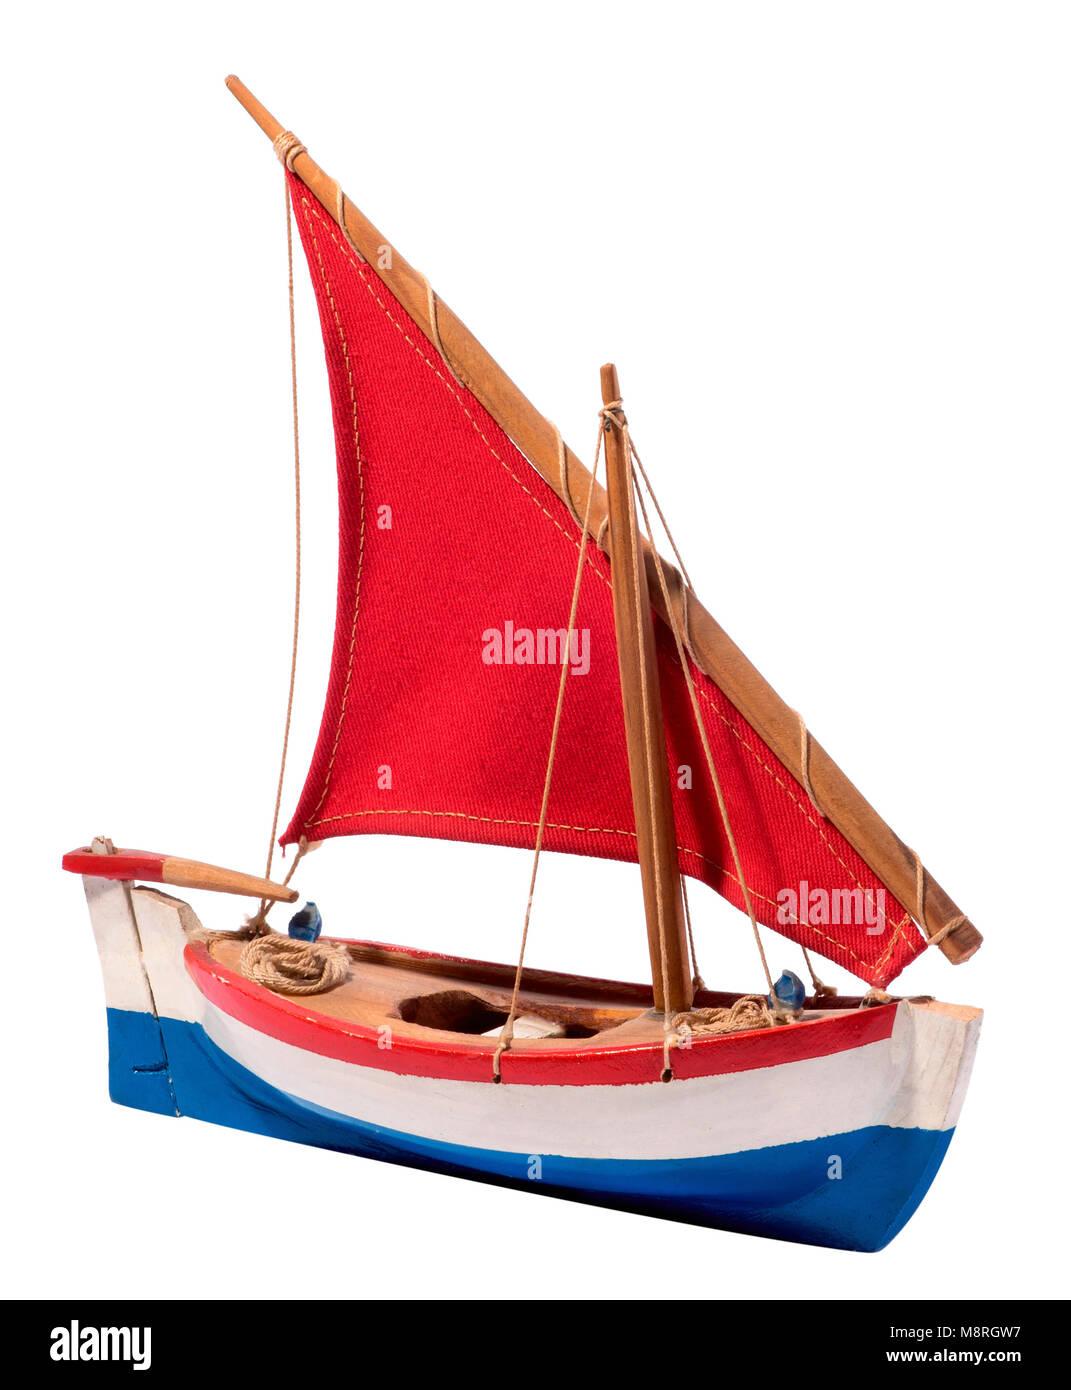 Fabriqué en bois simple coloré avec bateau à voile Voile rouge et rouge, blanc et bleu couleurs sur la coque et d'un gouvernail et des talles isolated on white Banque D'Images